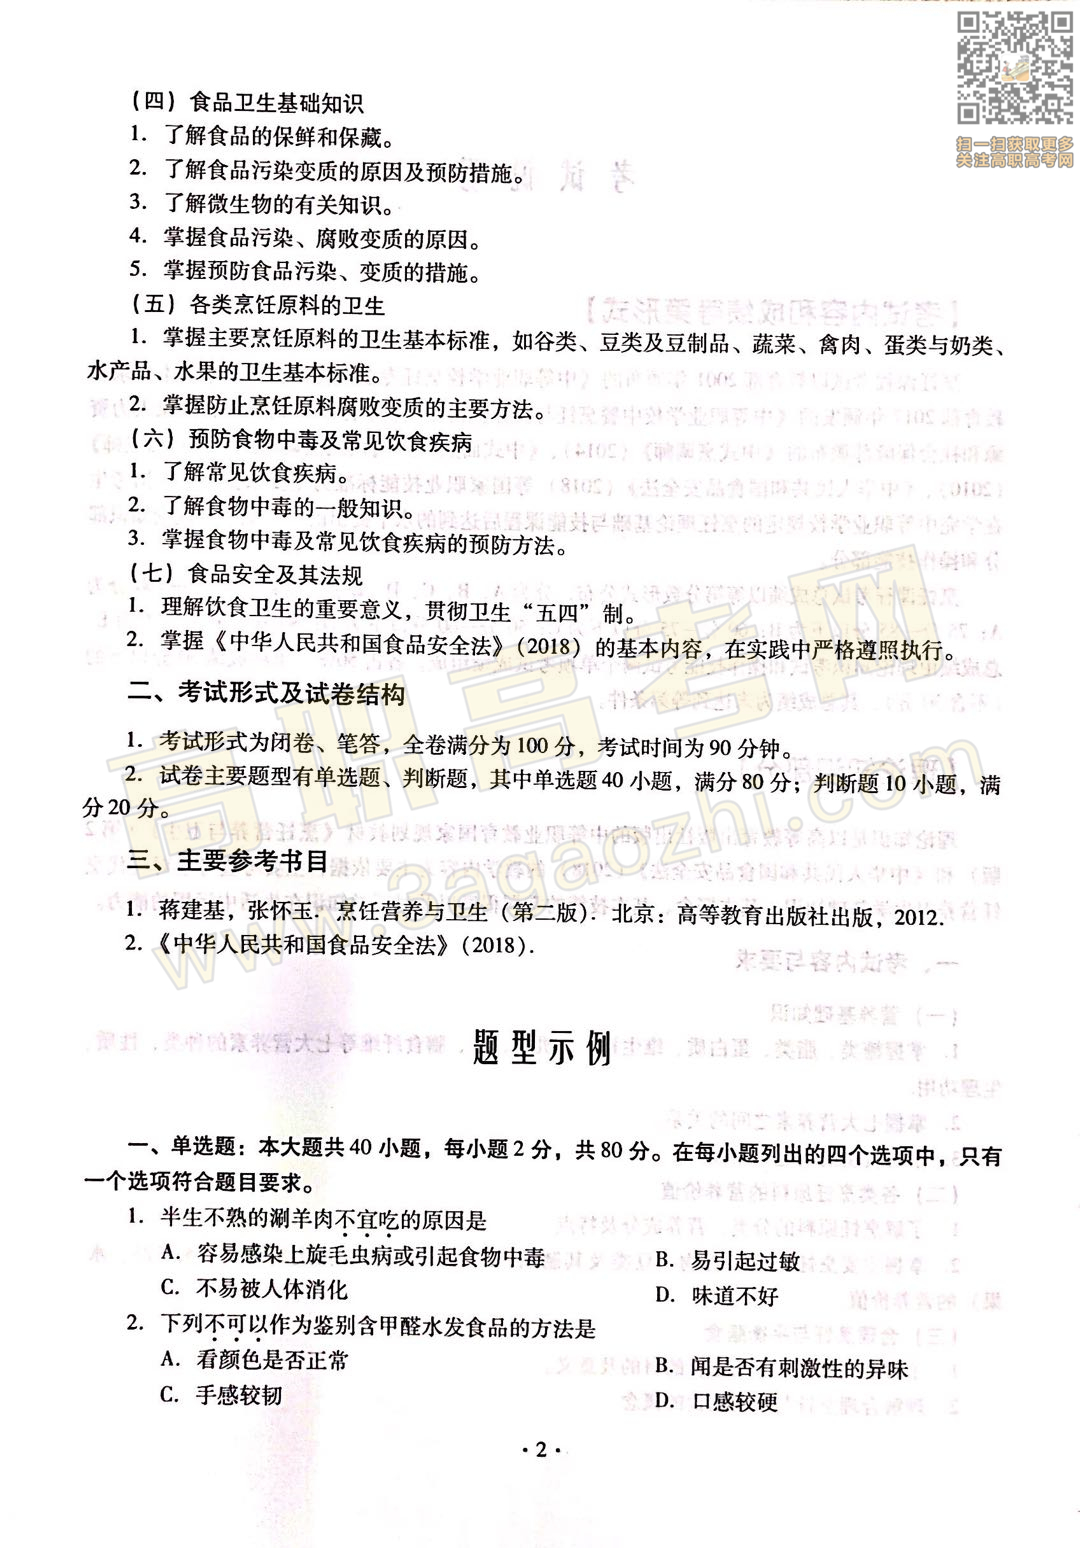 烹饪证书,2020年广东中职技能课程考试大纲及样题